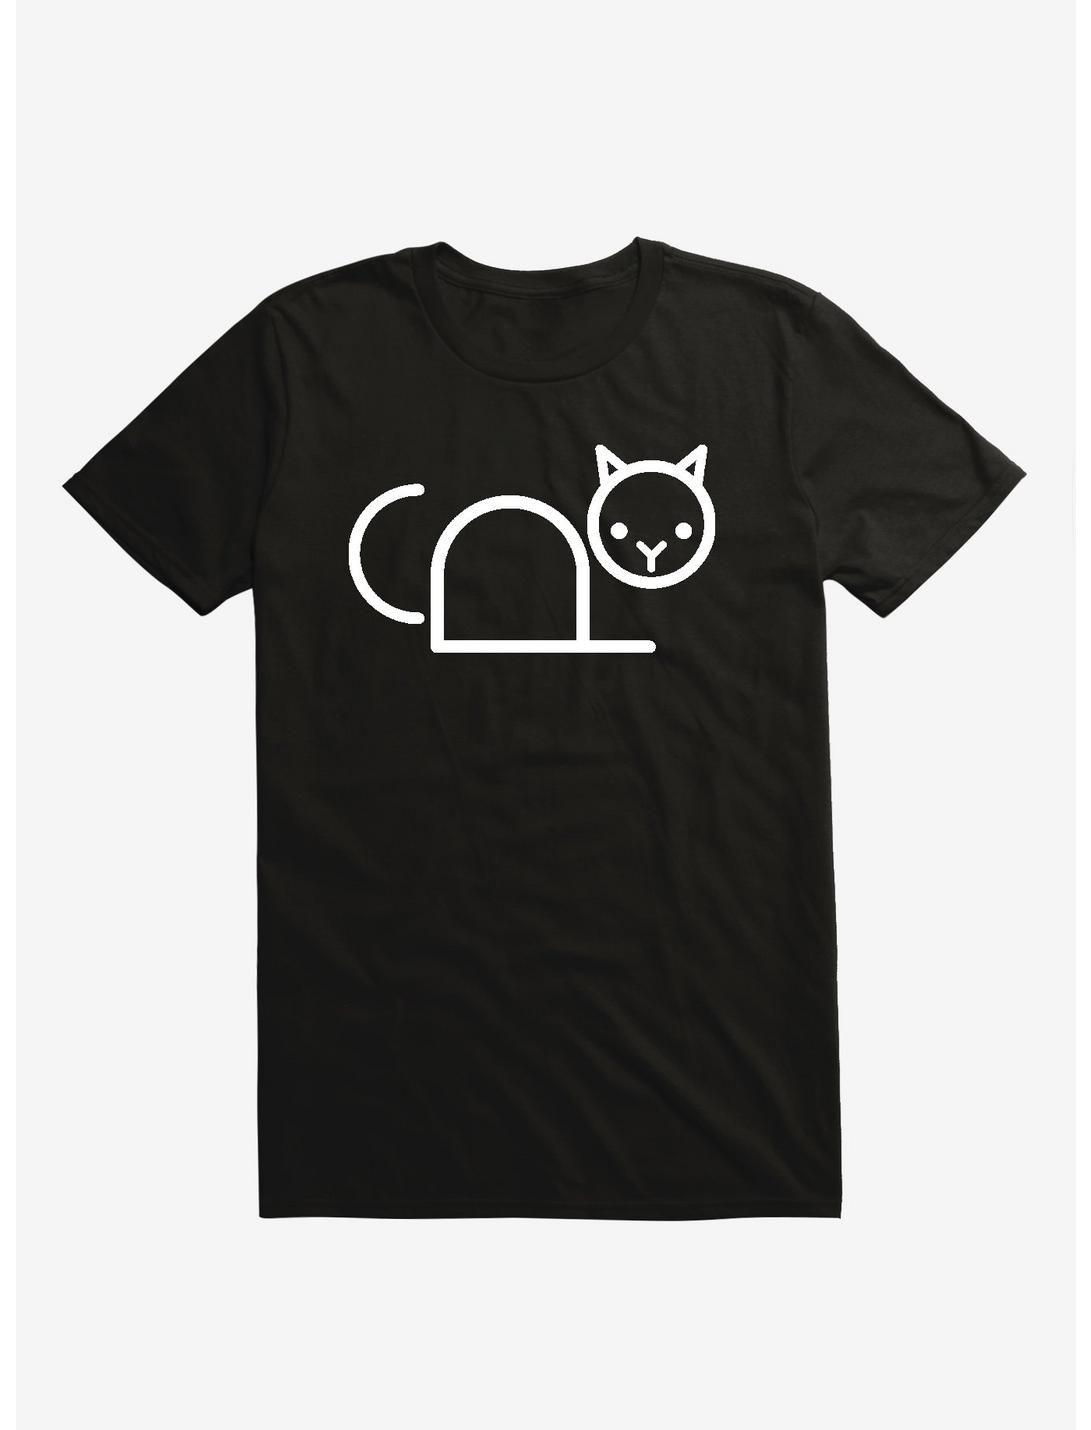 Copy Cat Black T-Shirt, BLACK, hi-res